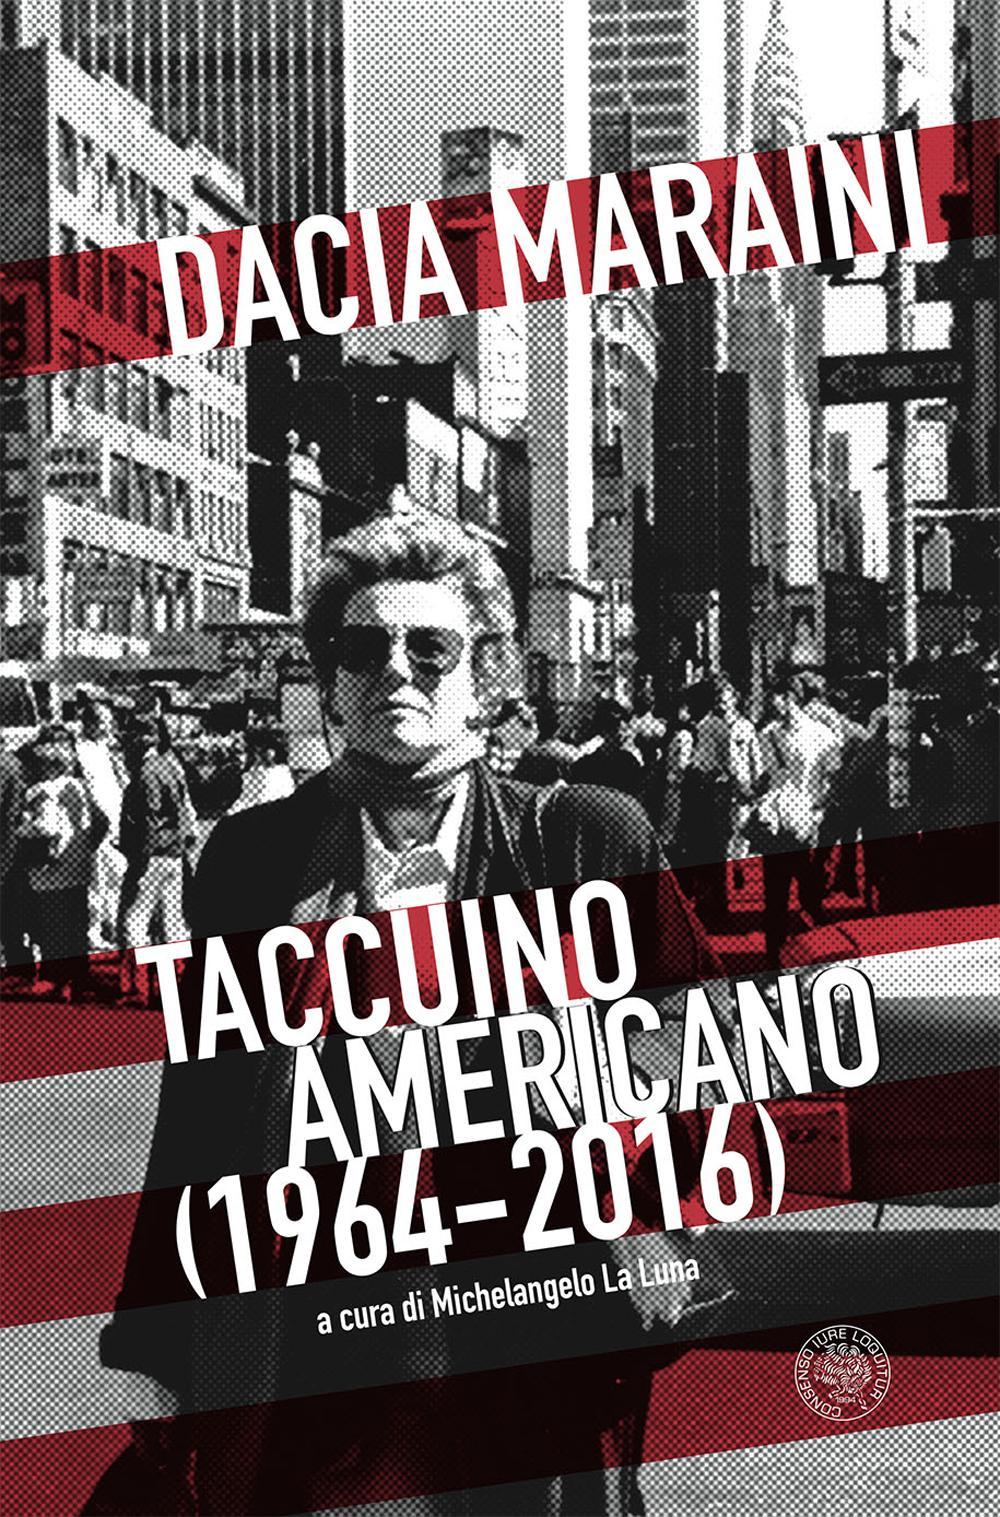 Taccuino americano (1964-2016)